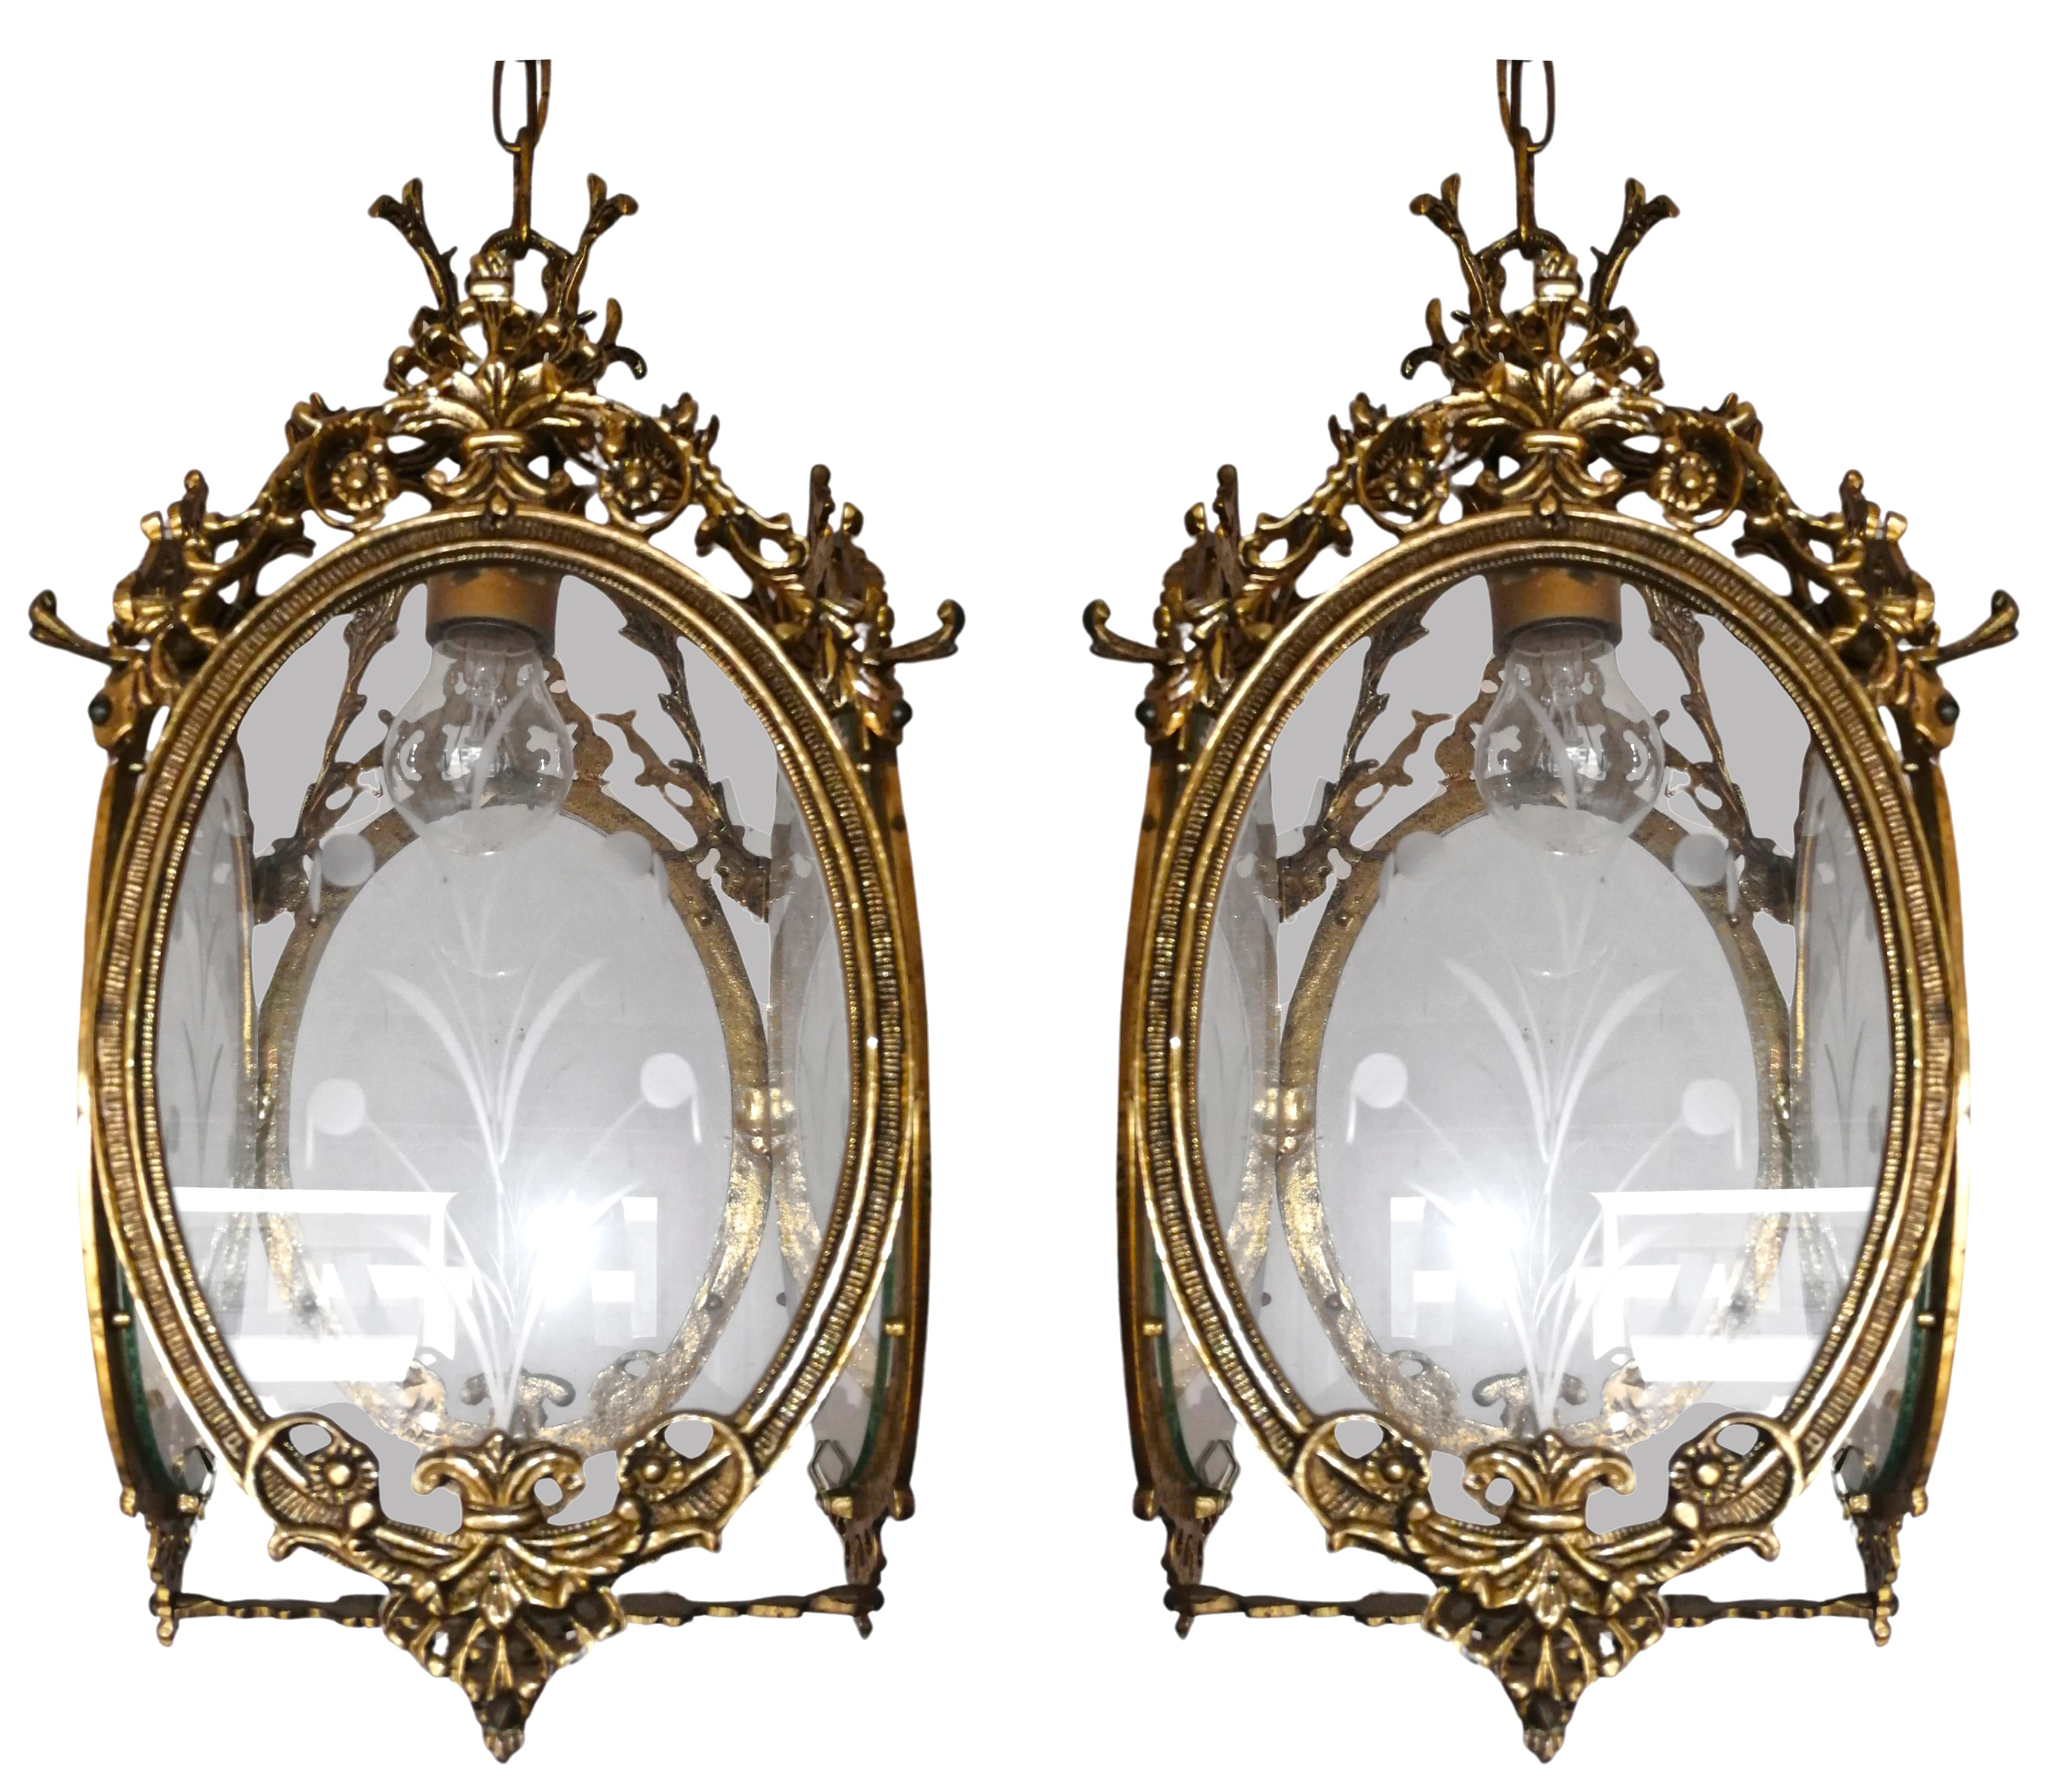 Magnifique paire de lanternes françaises de style Louis XVI. Quatre cadres en bronze moulé et doré avec abat-jour en verre taillé et gravé.
Prix à l'unité.

Dimensions :
